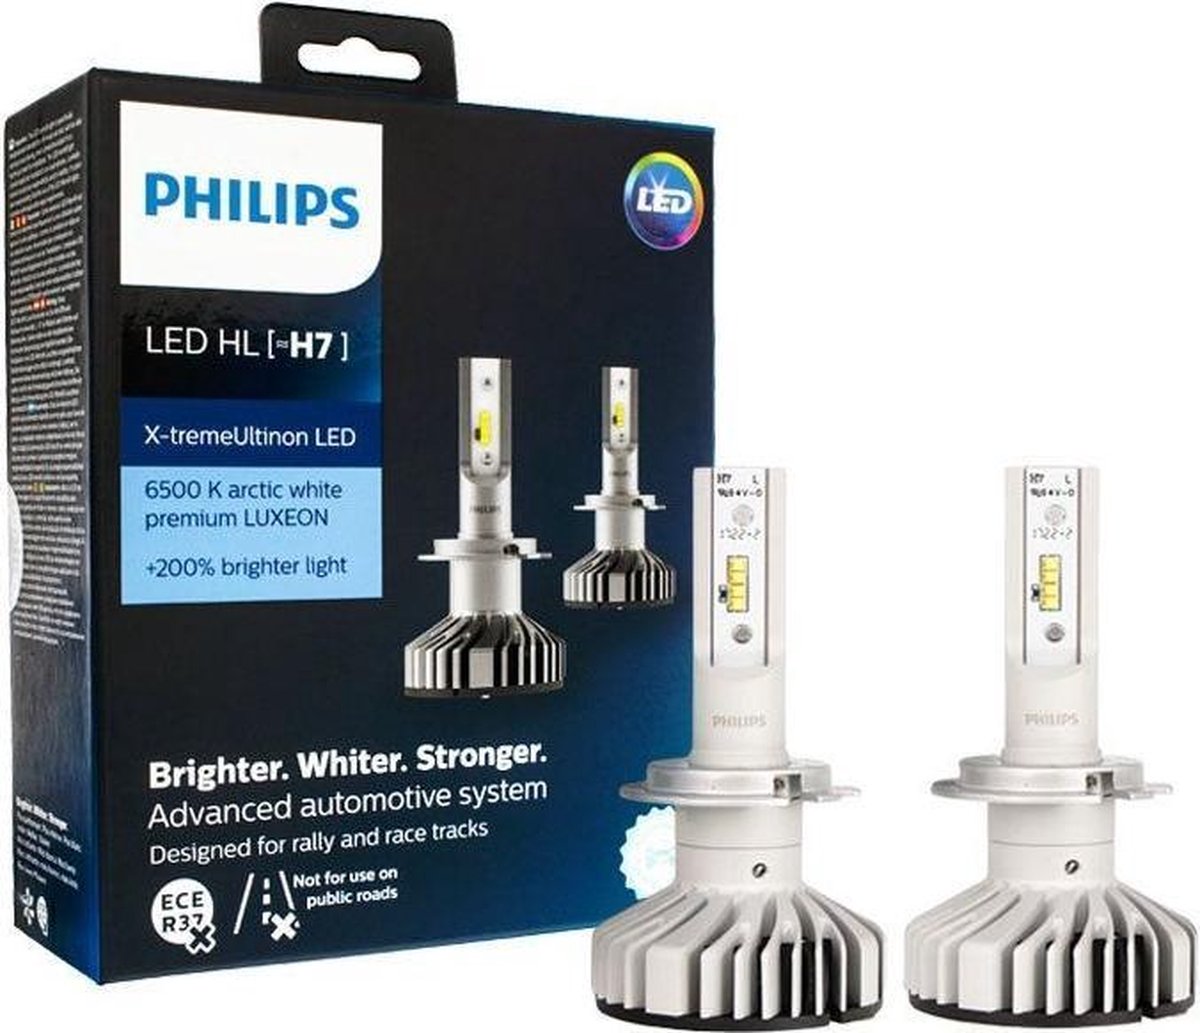 Филипс ближний свет. Диодные лампы h7 Philips. Лампа диодная Филипс н7. Светодиодные лампы Филипс h7. Светодиодные лампы led Philips h7.